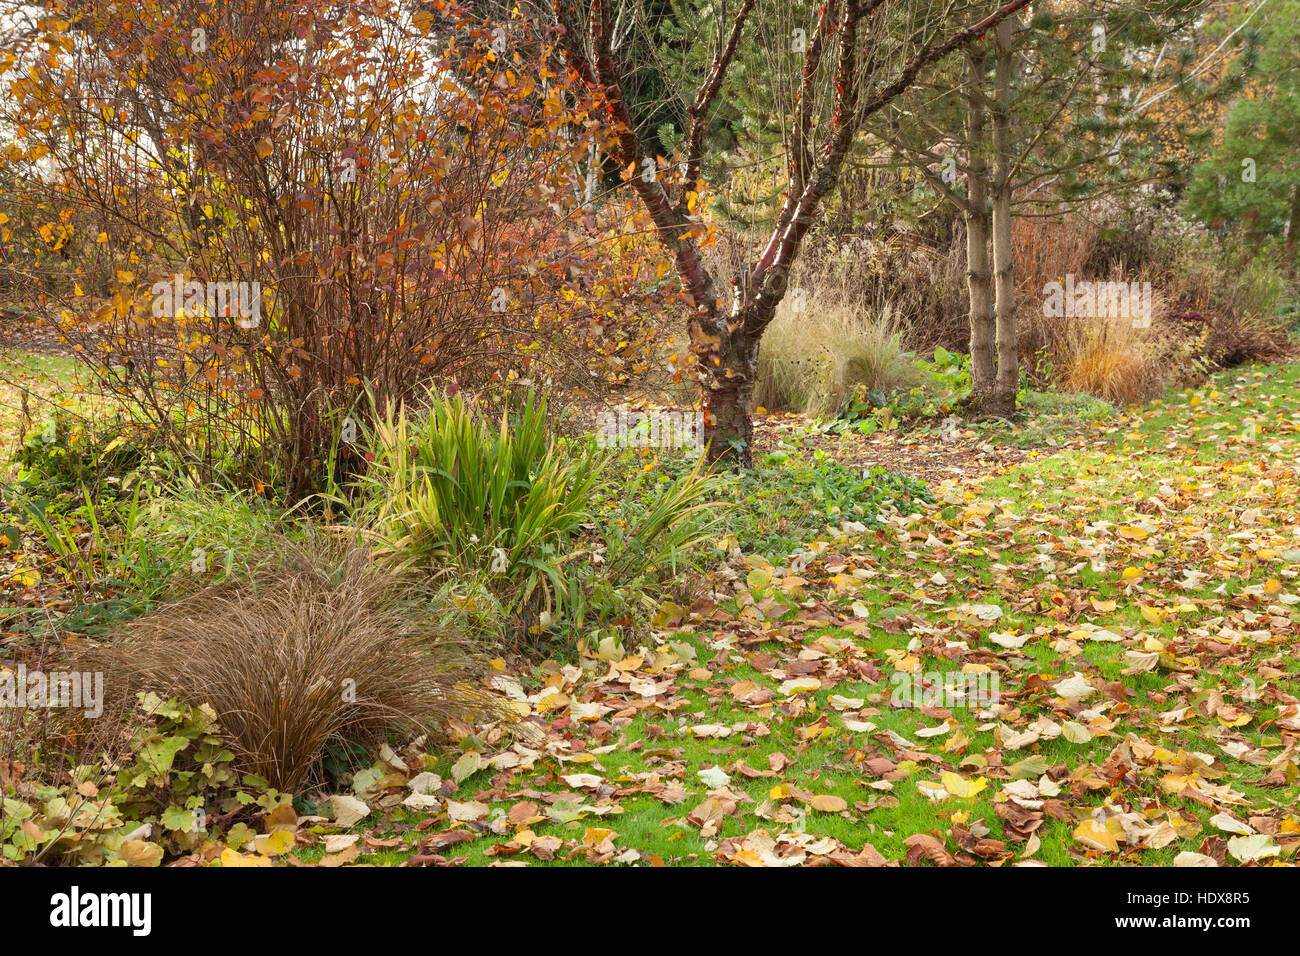 L'automne à Goltho Gardens dans le Lincolnshire, au Royaume-Uni. Un 4,5 acre jardin avec intérêt toute l'année. Partie de Lincolnshire Gardens scheme. Banque D'Images